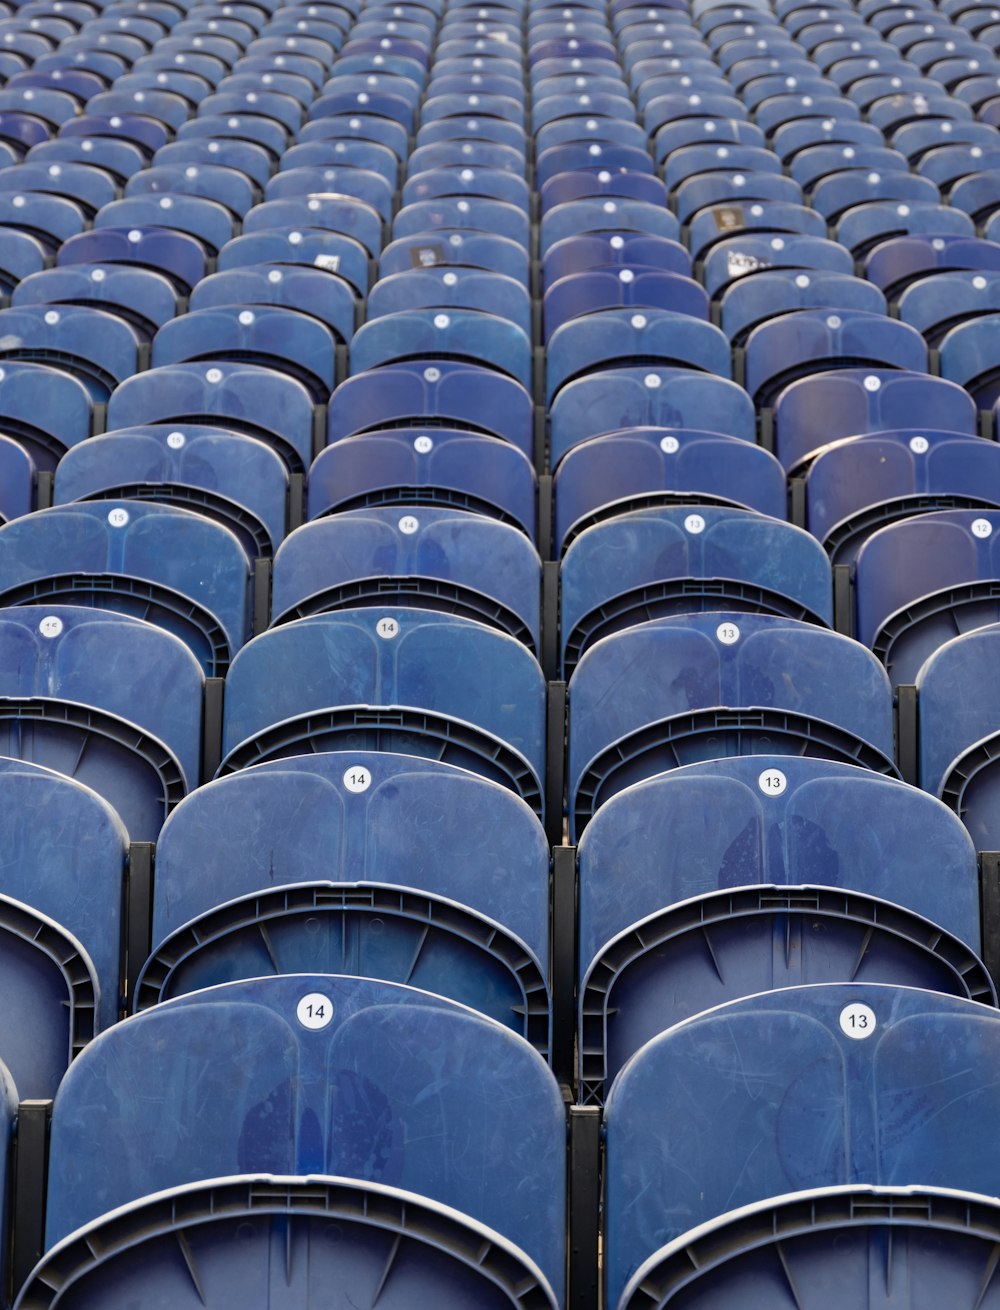 rangées de sièges bleus vides dans un stade